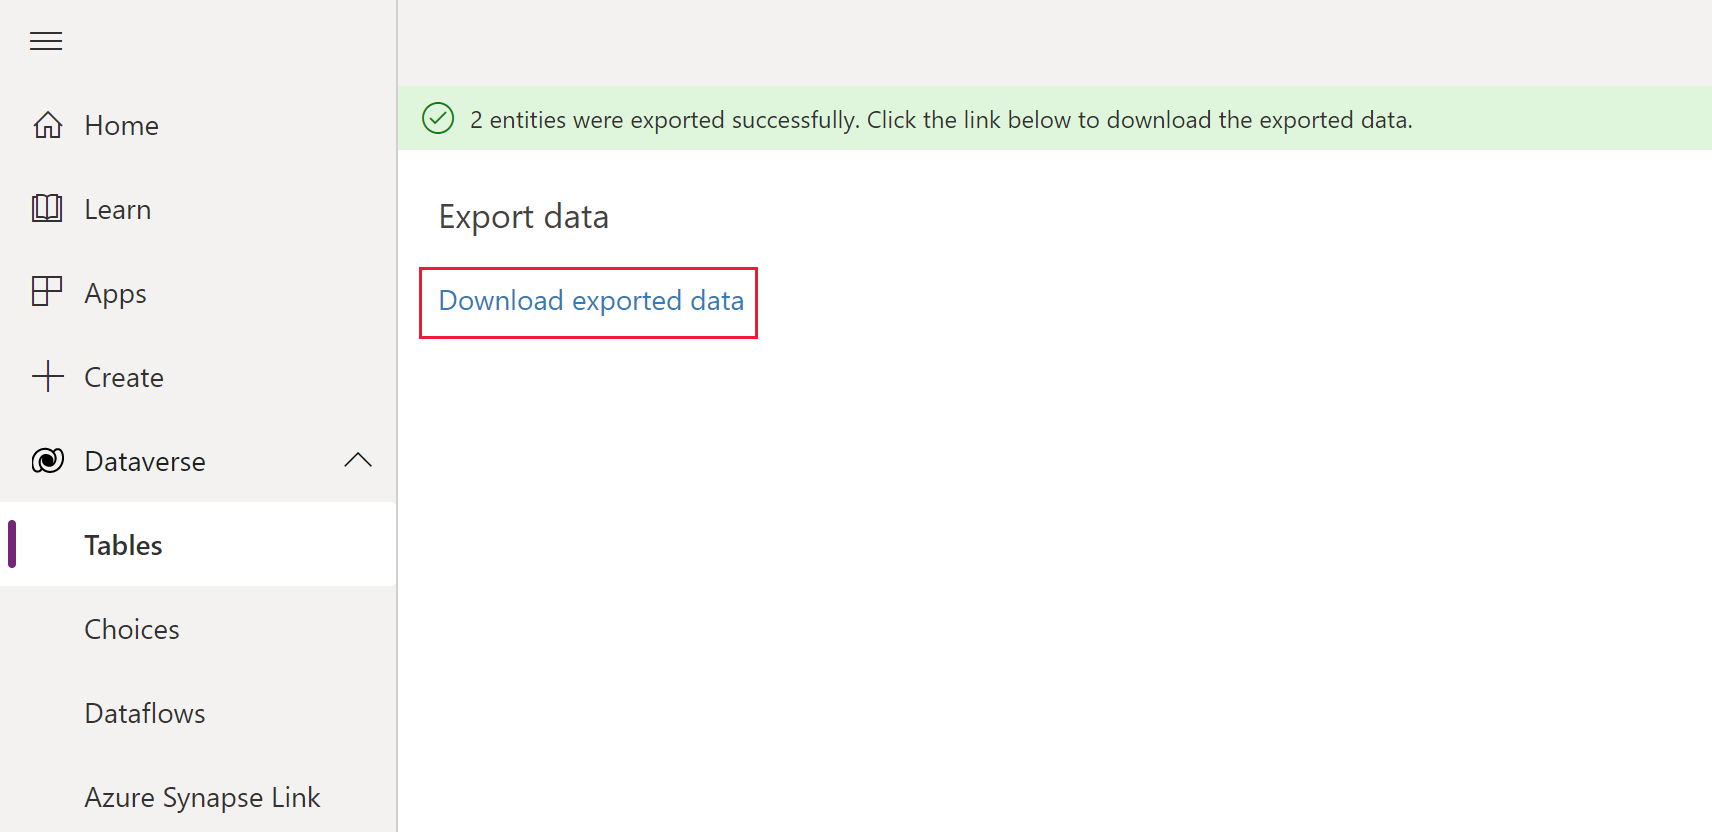 Пример экспорта, который показывает успешный экспорт со ссылкой на загружаемый файл.